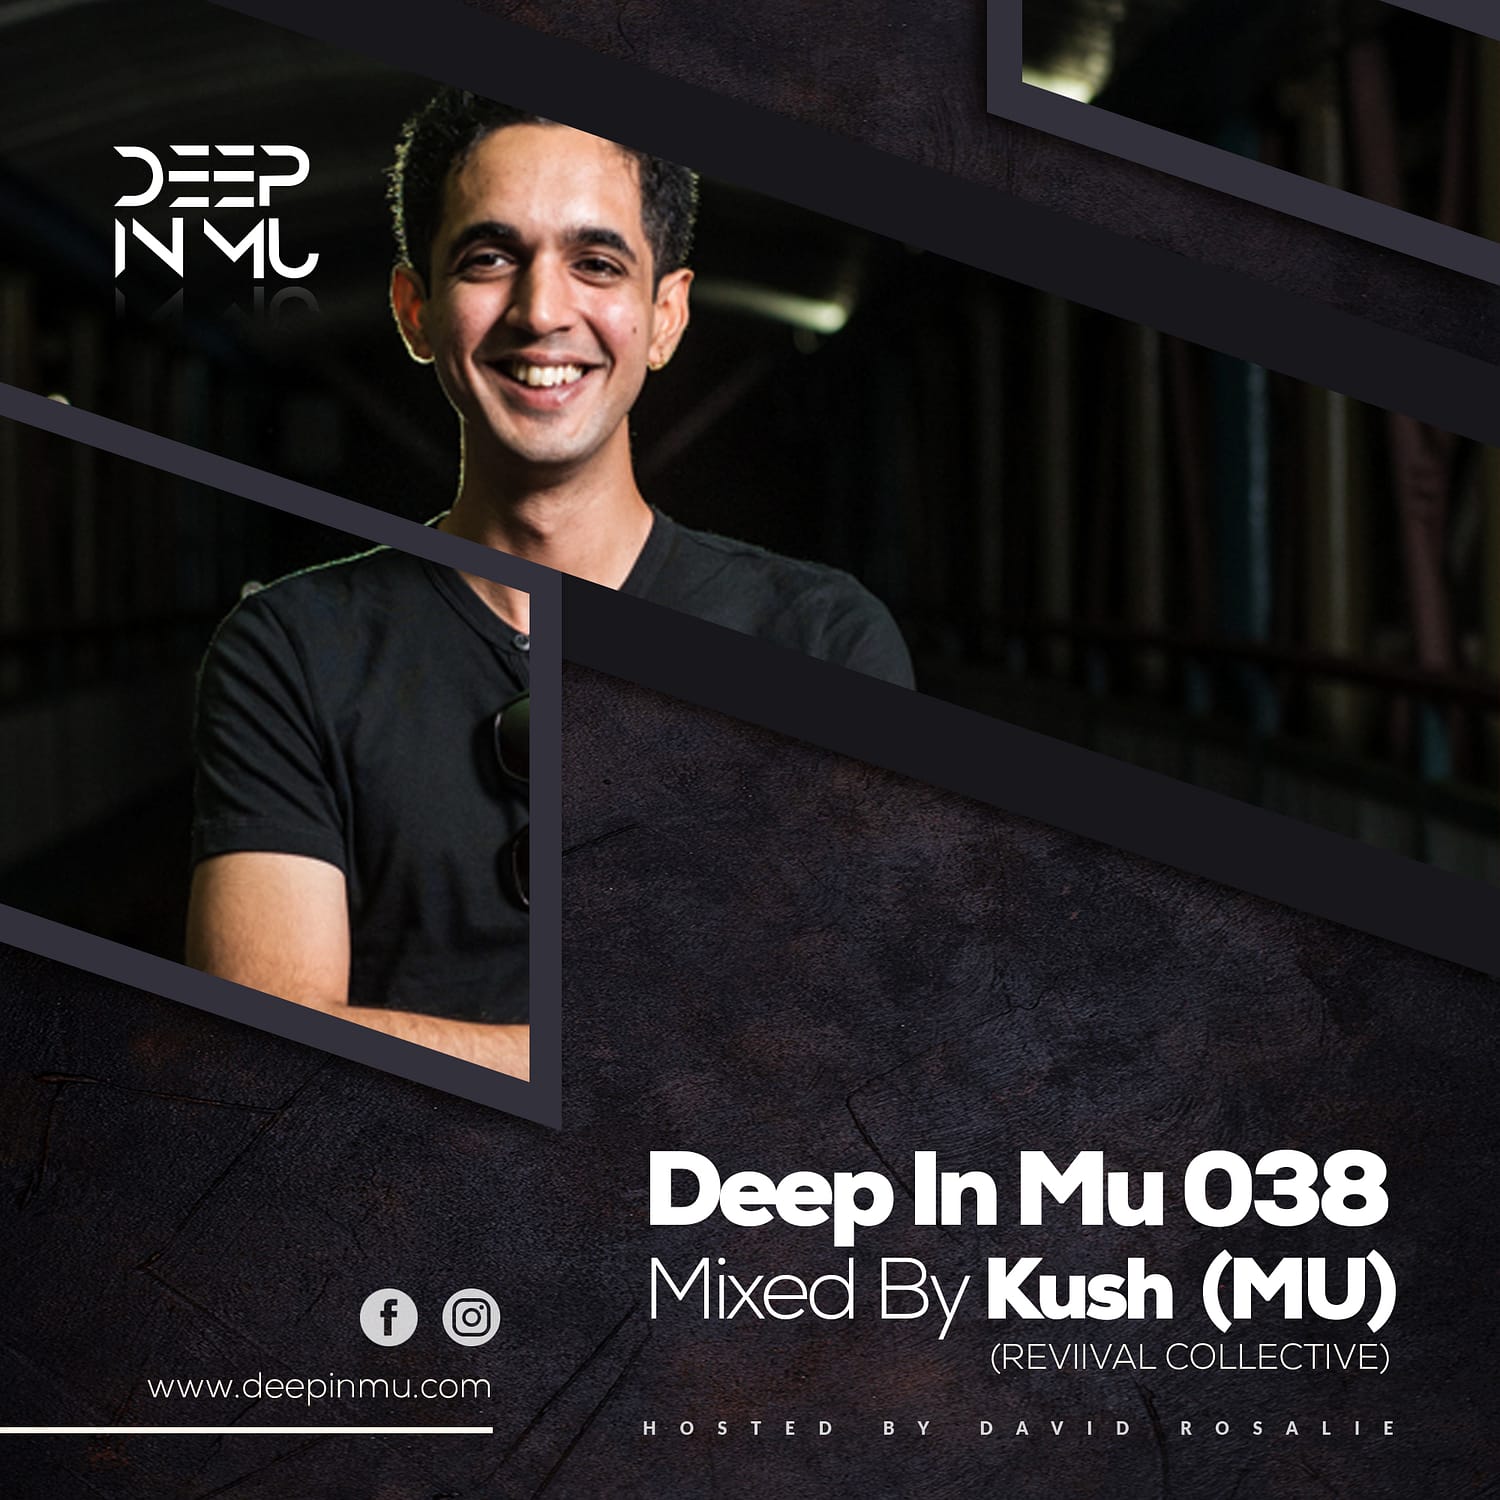 Deep in Mu 038 Mixed by Kush (MU)